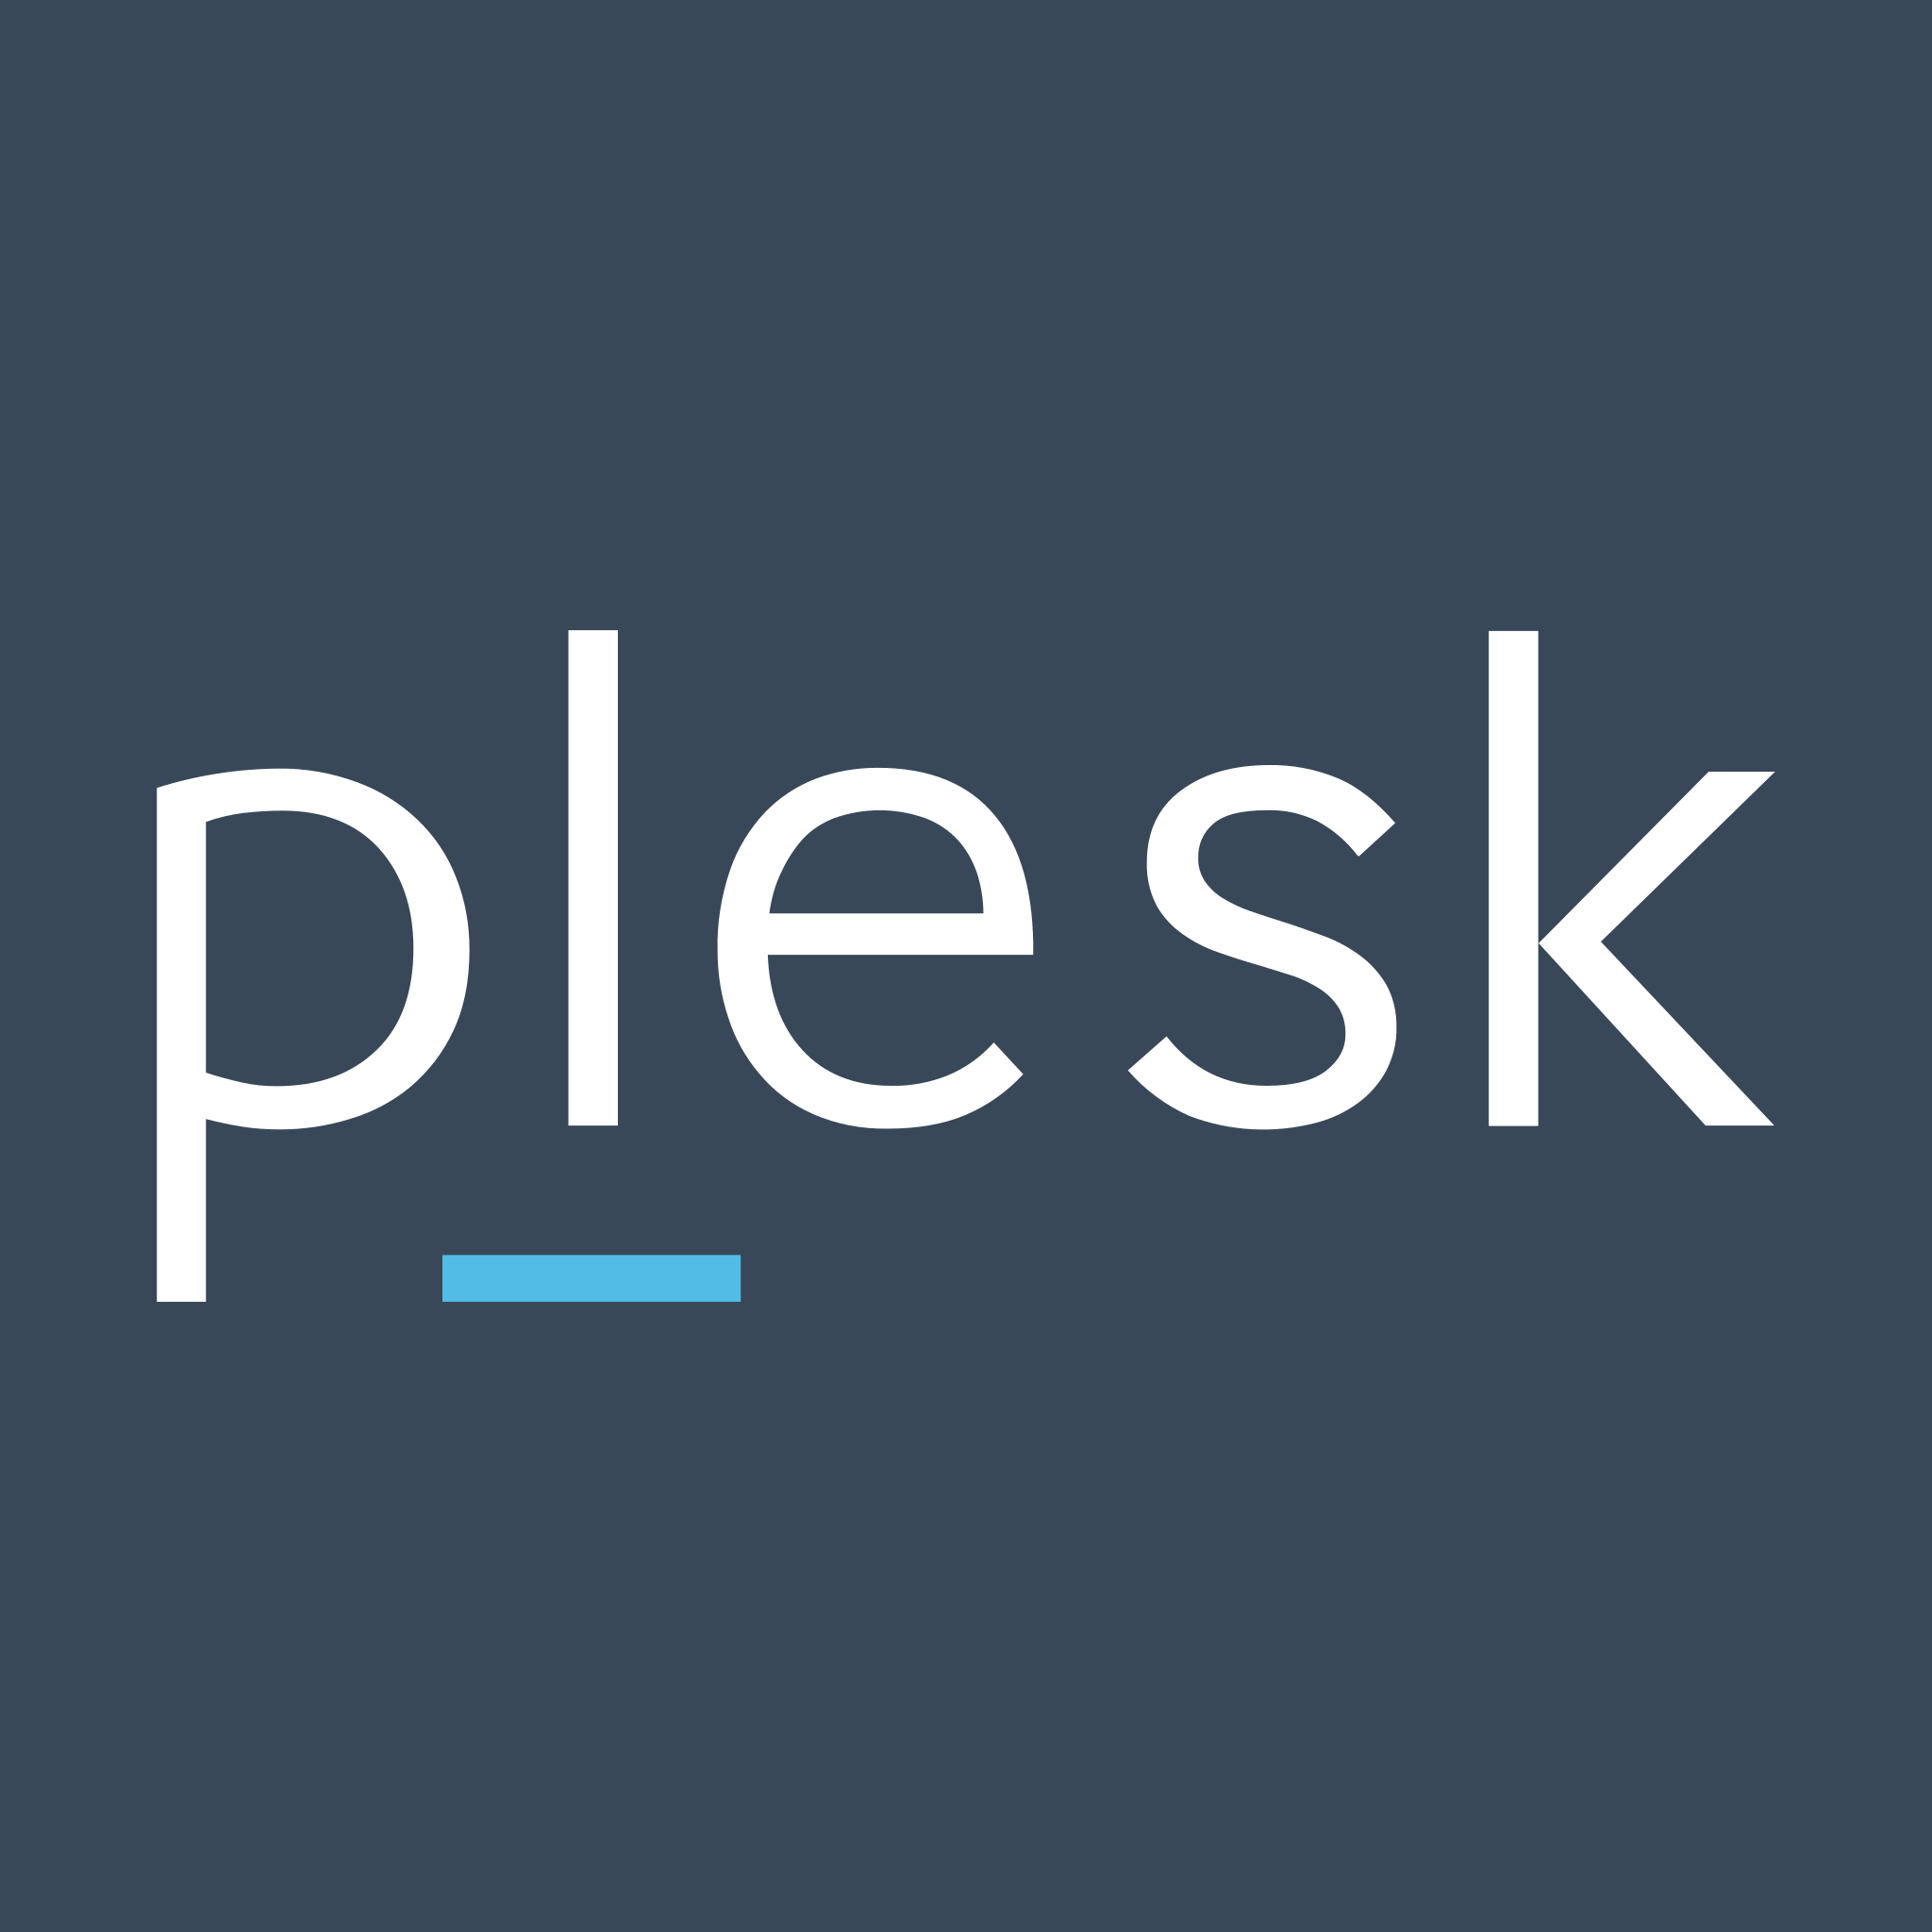 Máy chủ vật lý Plesk